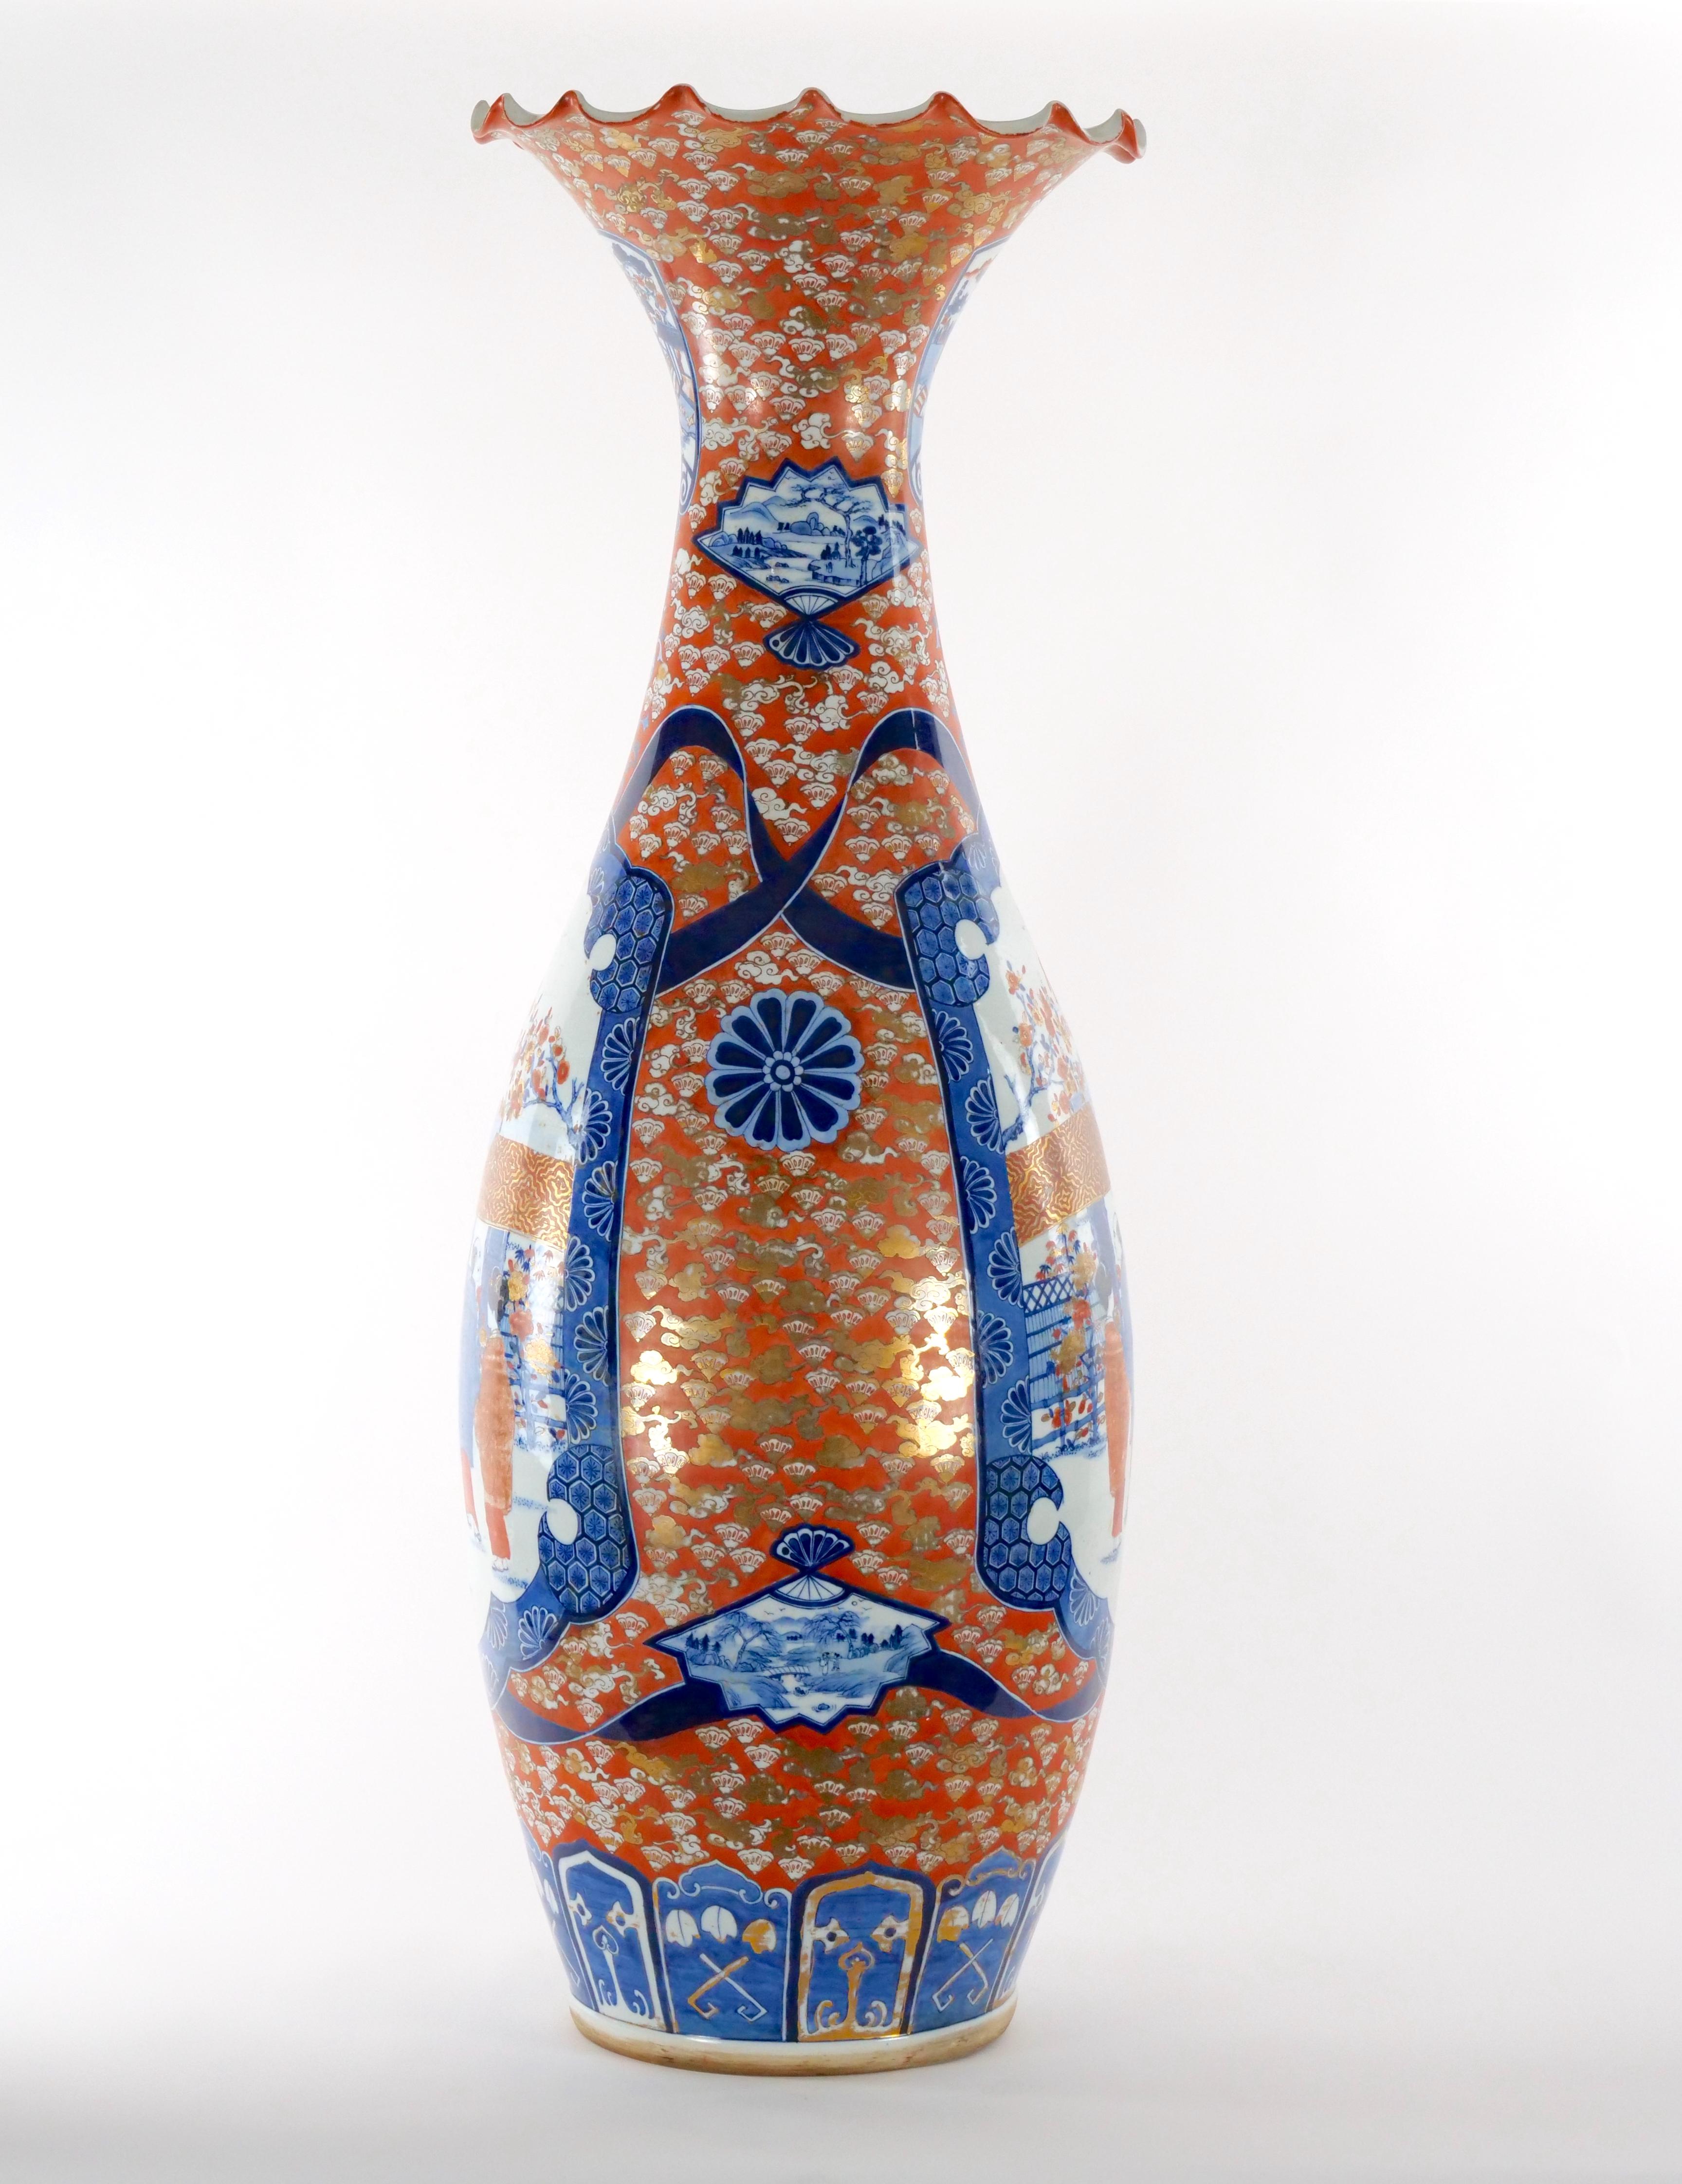 Monumental vase de sol décoratif en forme de trompette flori-form dans la porcelaine décorée Imari. Le vase de sol est doté d'un balustre  jusqu'à l'encolure s'évase en un bord ondulé. Chaque côté de la  Le corps est décoré en bleu et rouge accentué